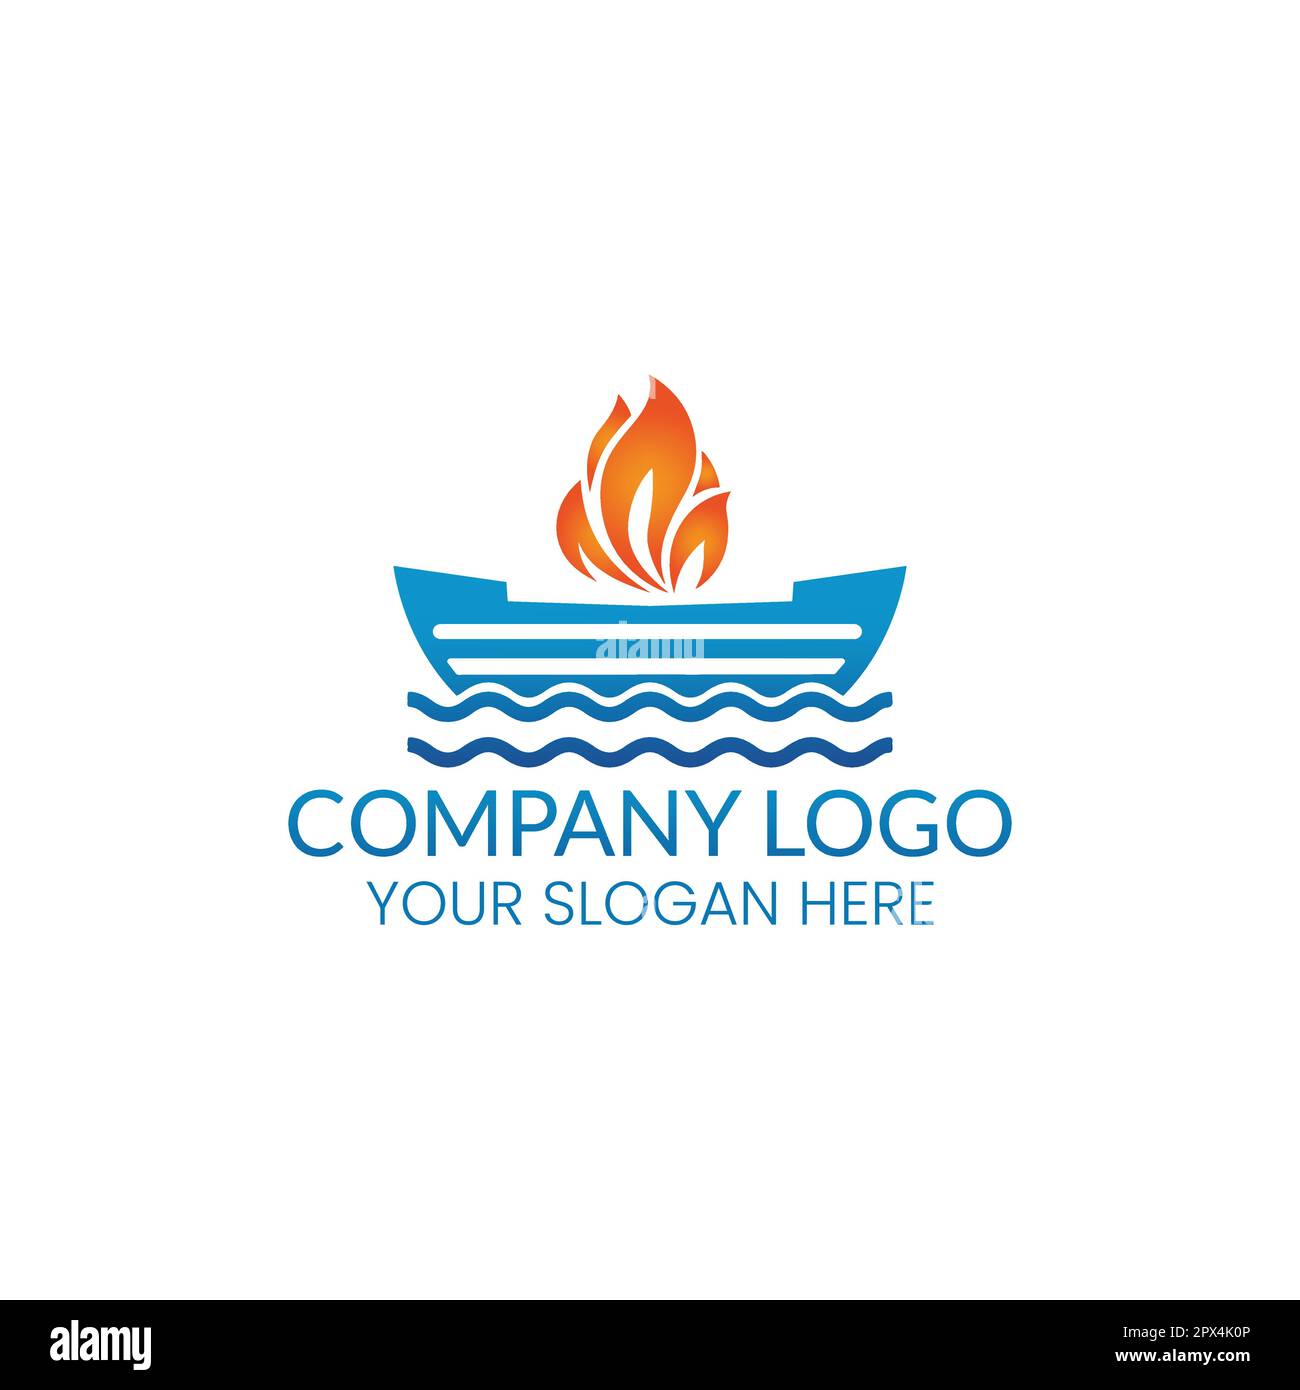 ship and fire logo vector template Stock Vector